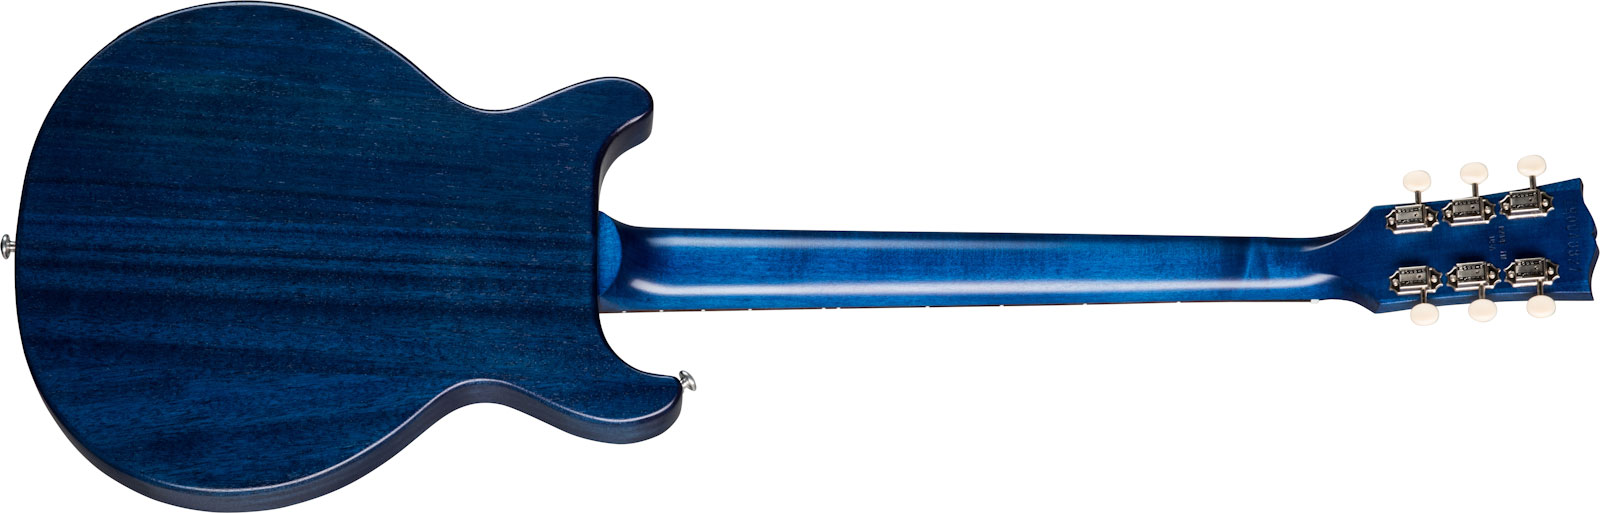 Gibson Les Paul Special Tribute Dc Modern P90 - Blue Stain - Guitarra eléctrica de doble corte - Variation 1